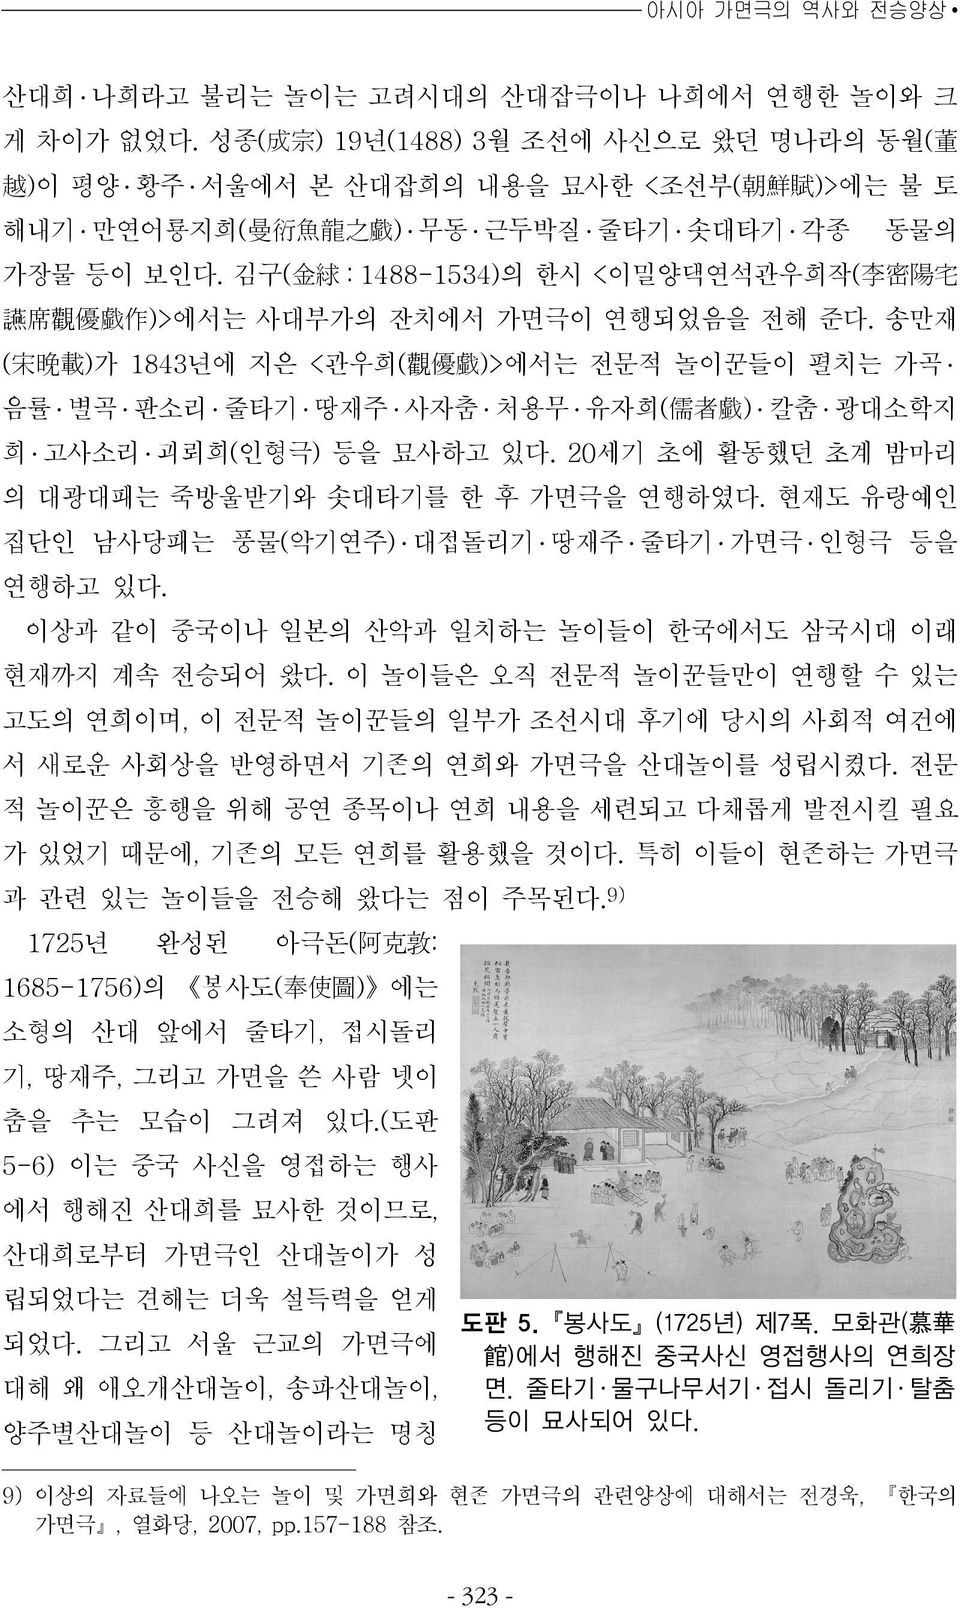 김구( 金 絿 : 1488-1534)의 한시 <이밀양댁연석관우희작( 李 密 陽 宅 讌 席 觀 優 戱 作 )>에서는 사대부가의 잔치에서 가면극이 연행되었음을 전해 준다.